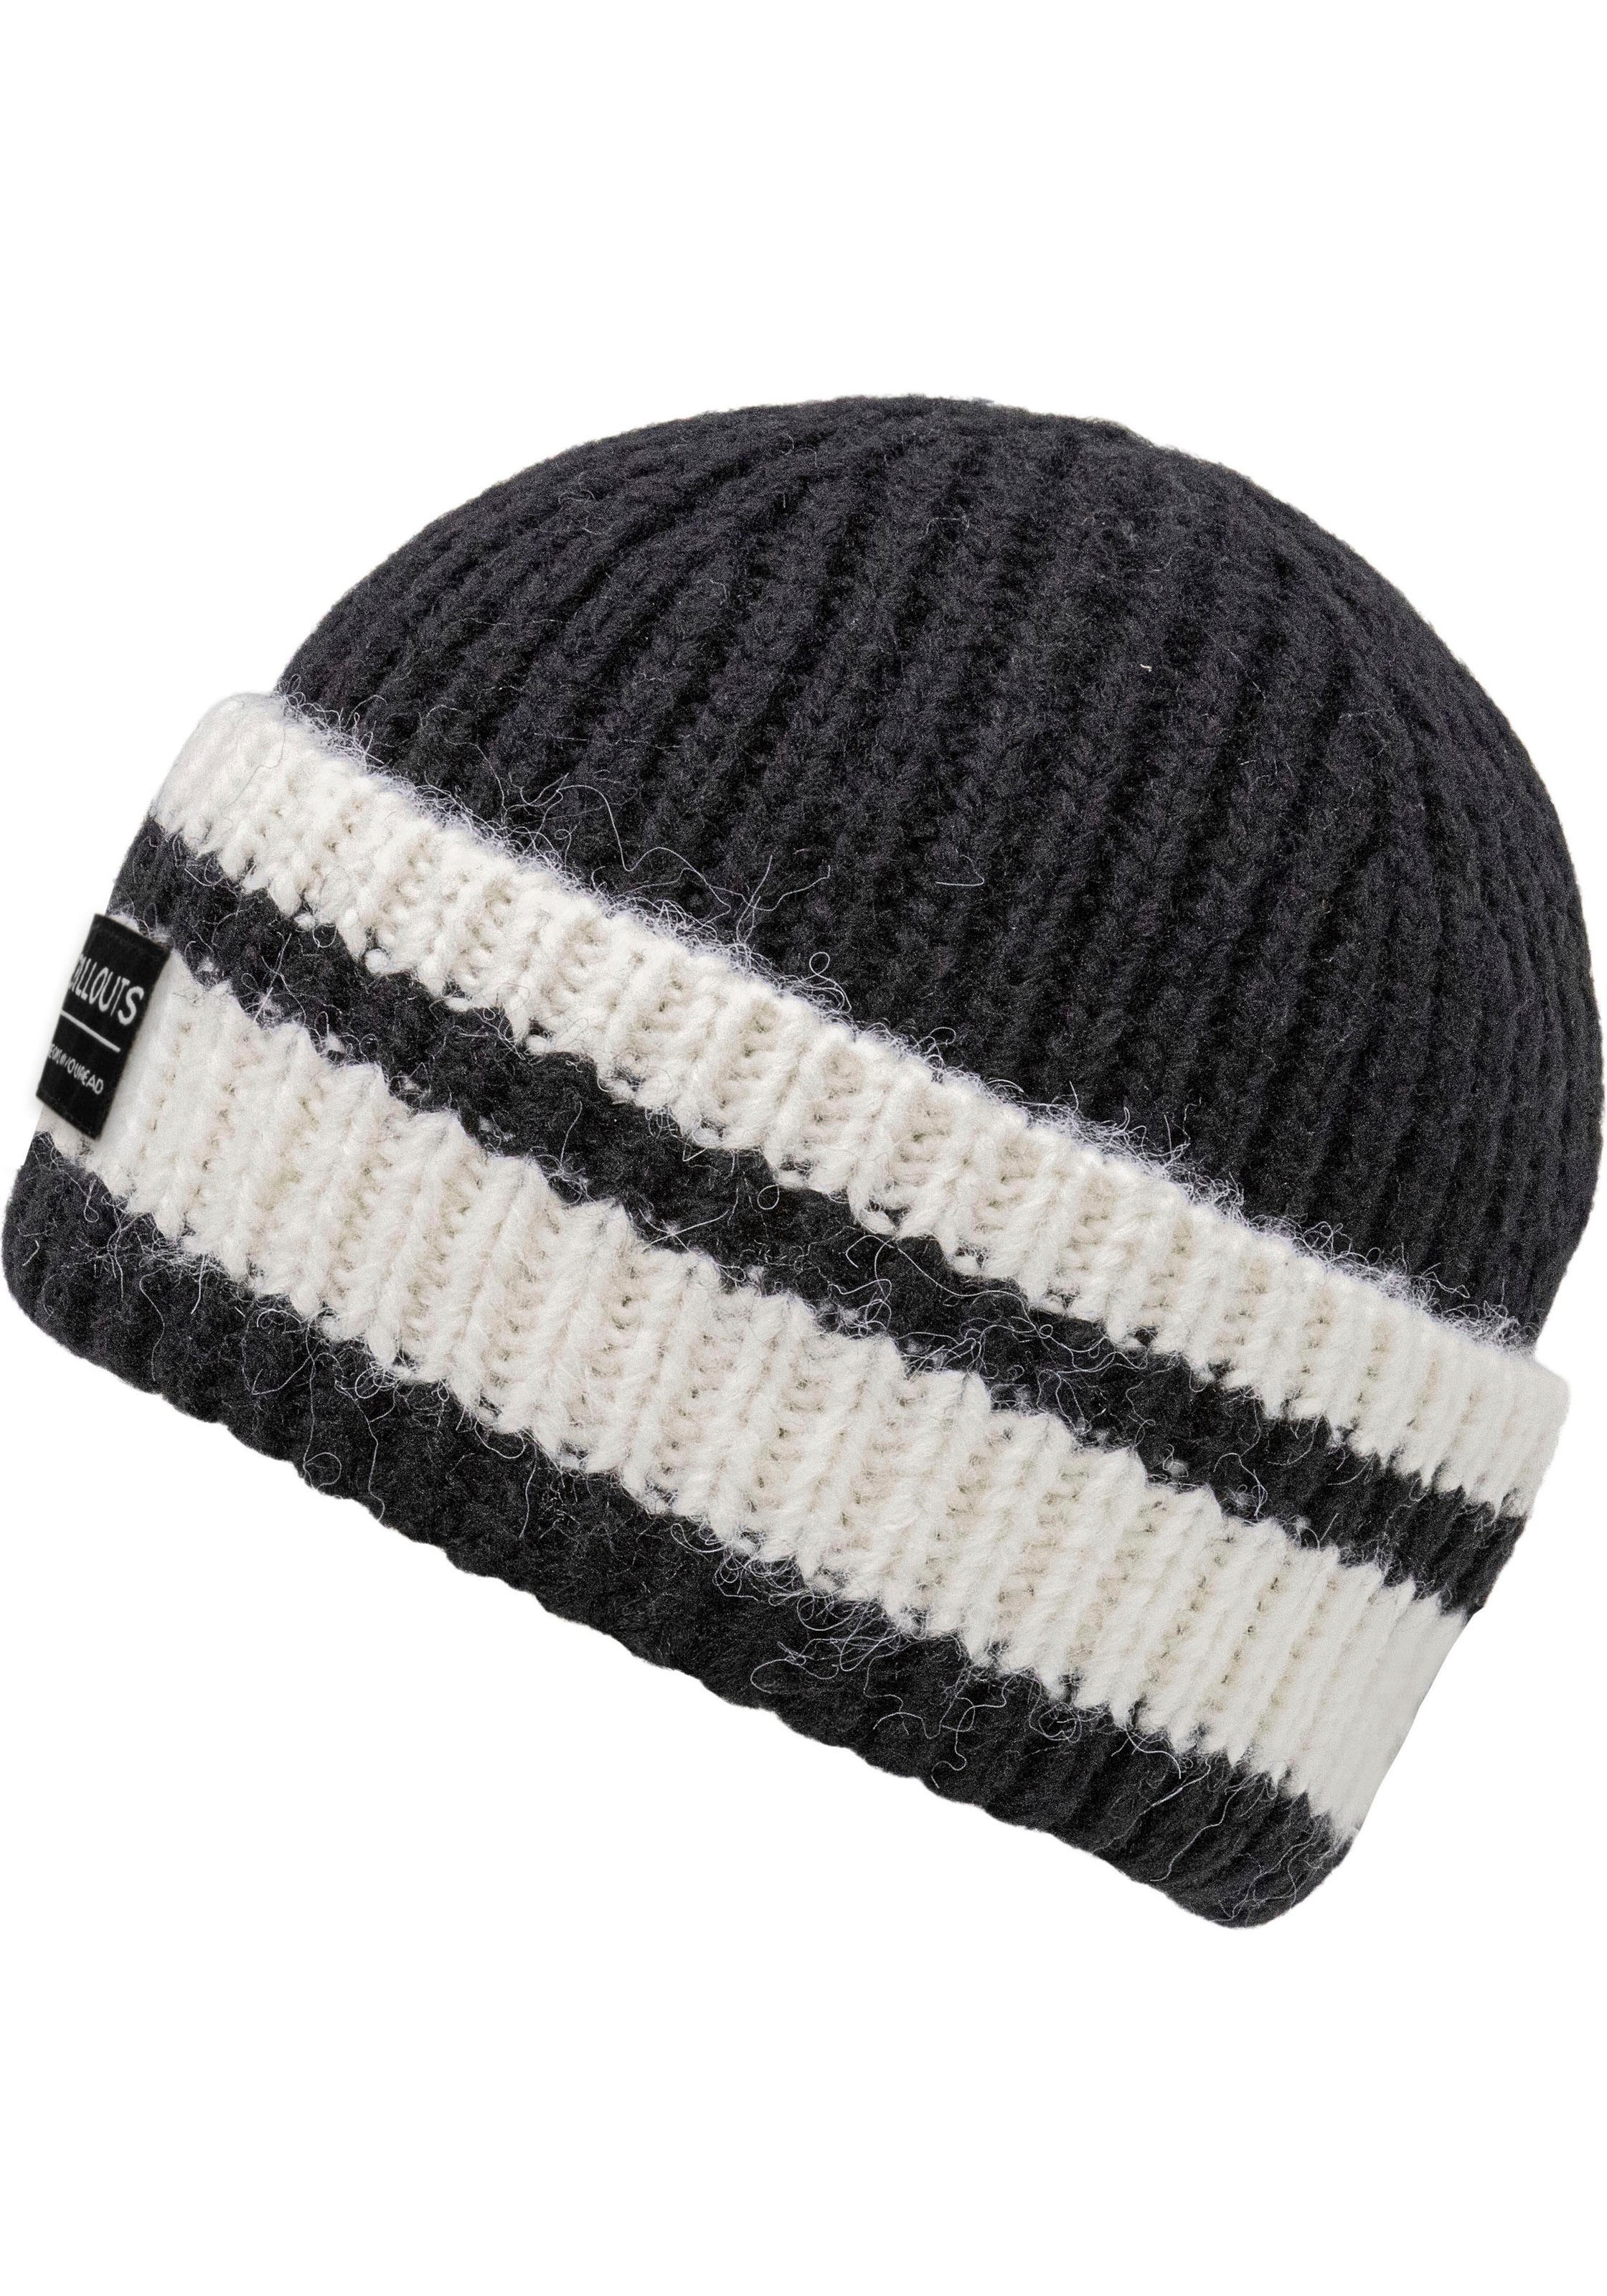 chillouts Strickmütze »Cooper Hat«, mit Kontrast-Streifen